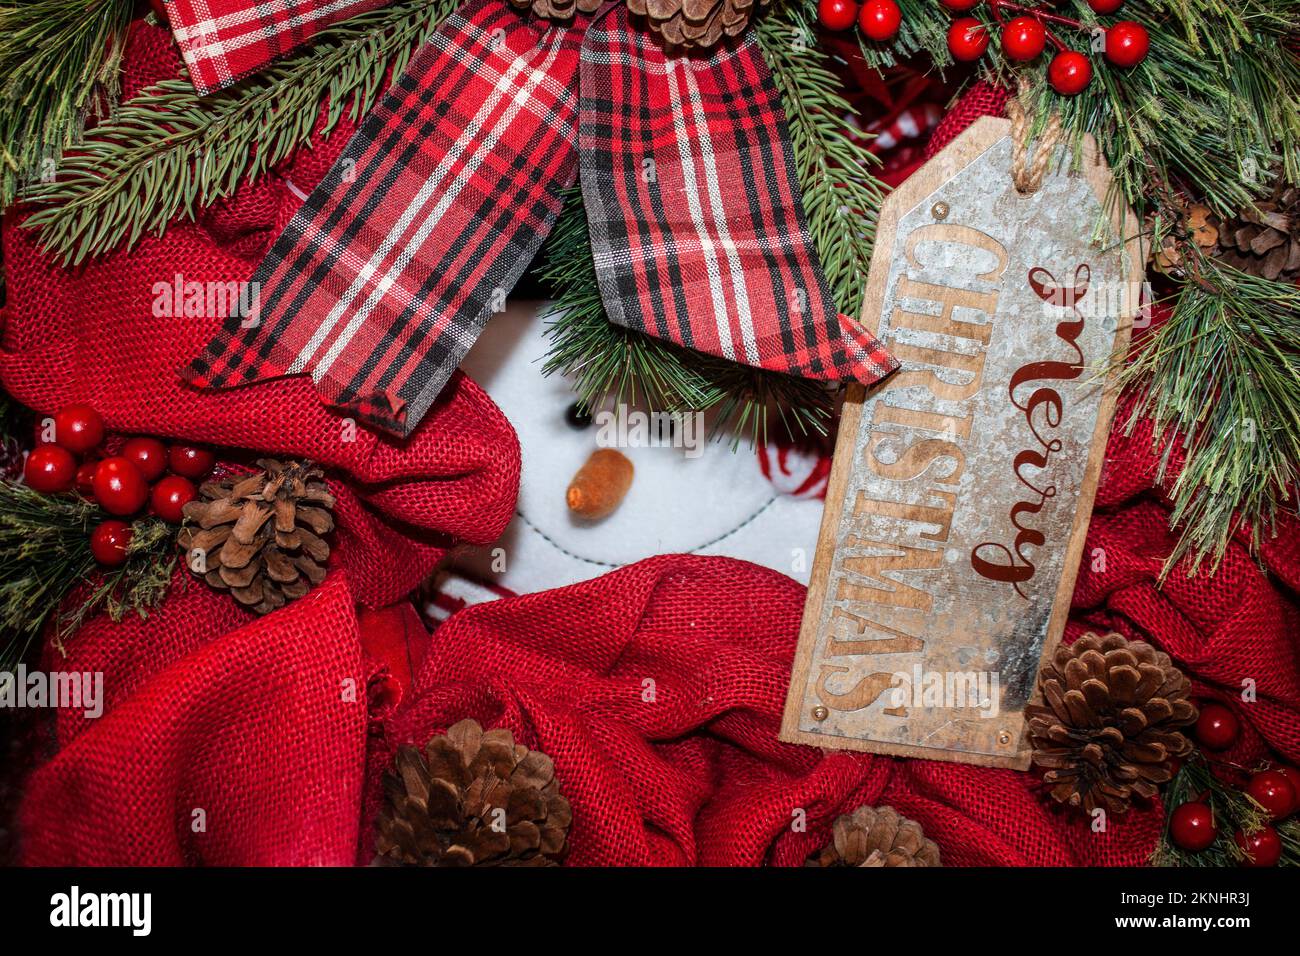 Guck-Guck-Weihnachtsmann sieht sich durch die Weihnachtsdekorationen mit rotem Burlap und Pinienzapfen und Beeren mit dem Anhänger „Merry Christmas“ an Stockfoto